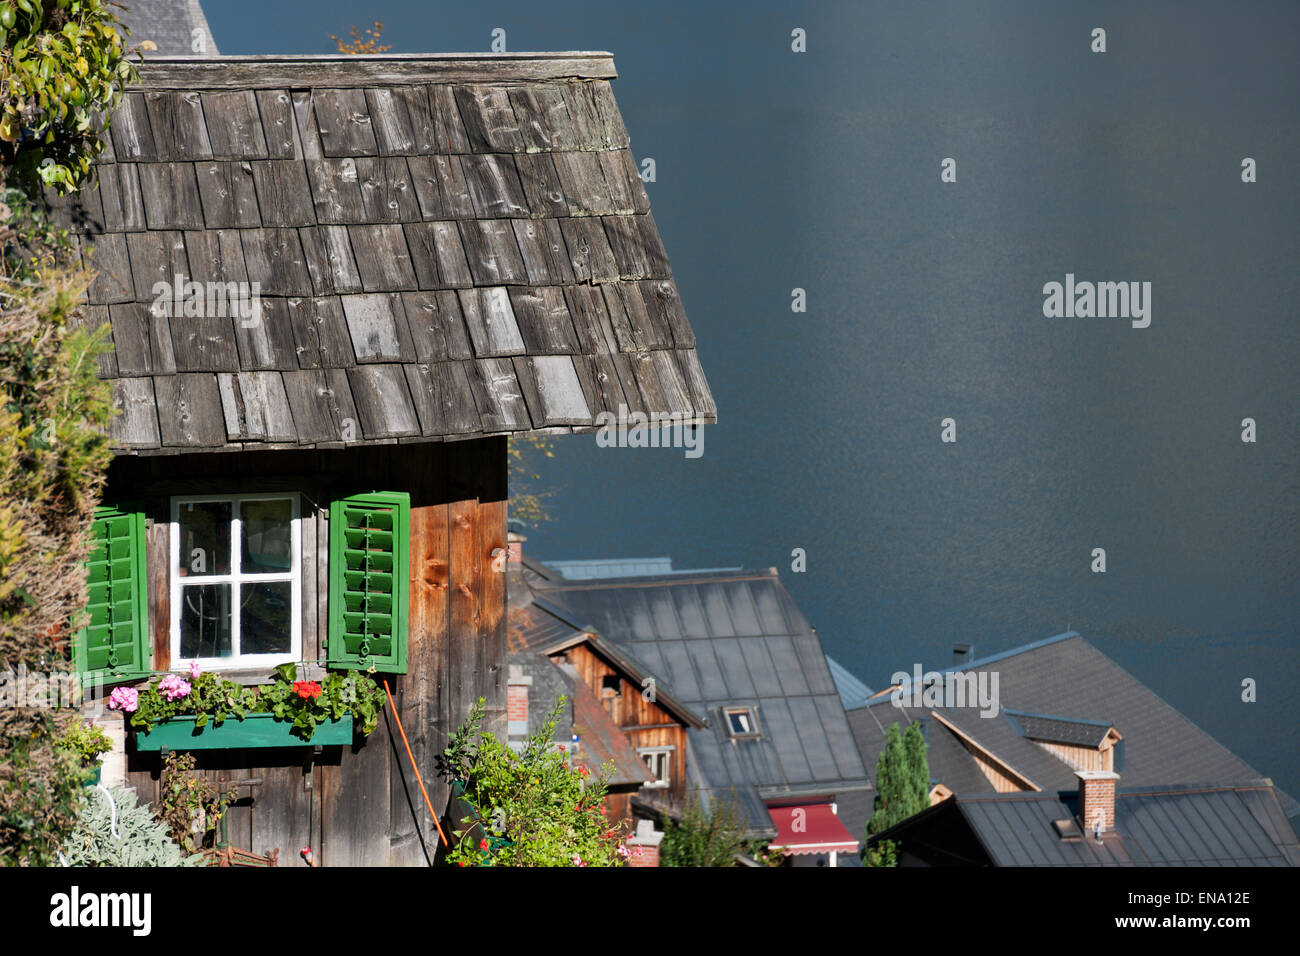 Holzhütte mit Fenster, Blumen und grünen Fensterläden über Hallstatt, Salzkammergut, Österreich Stockfoto